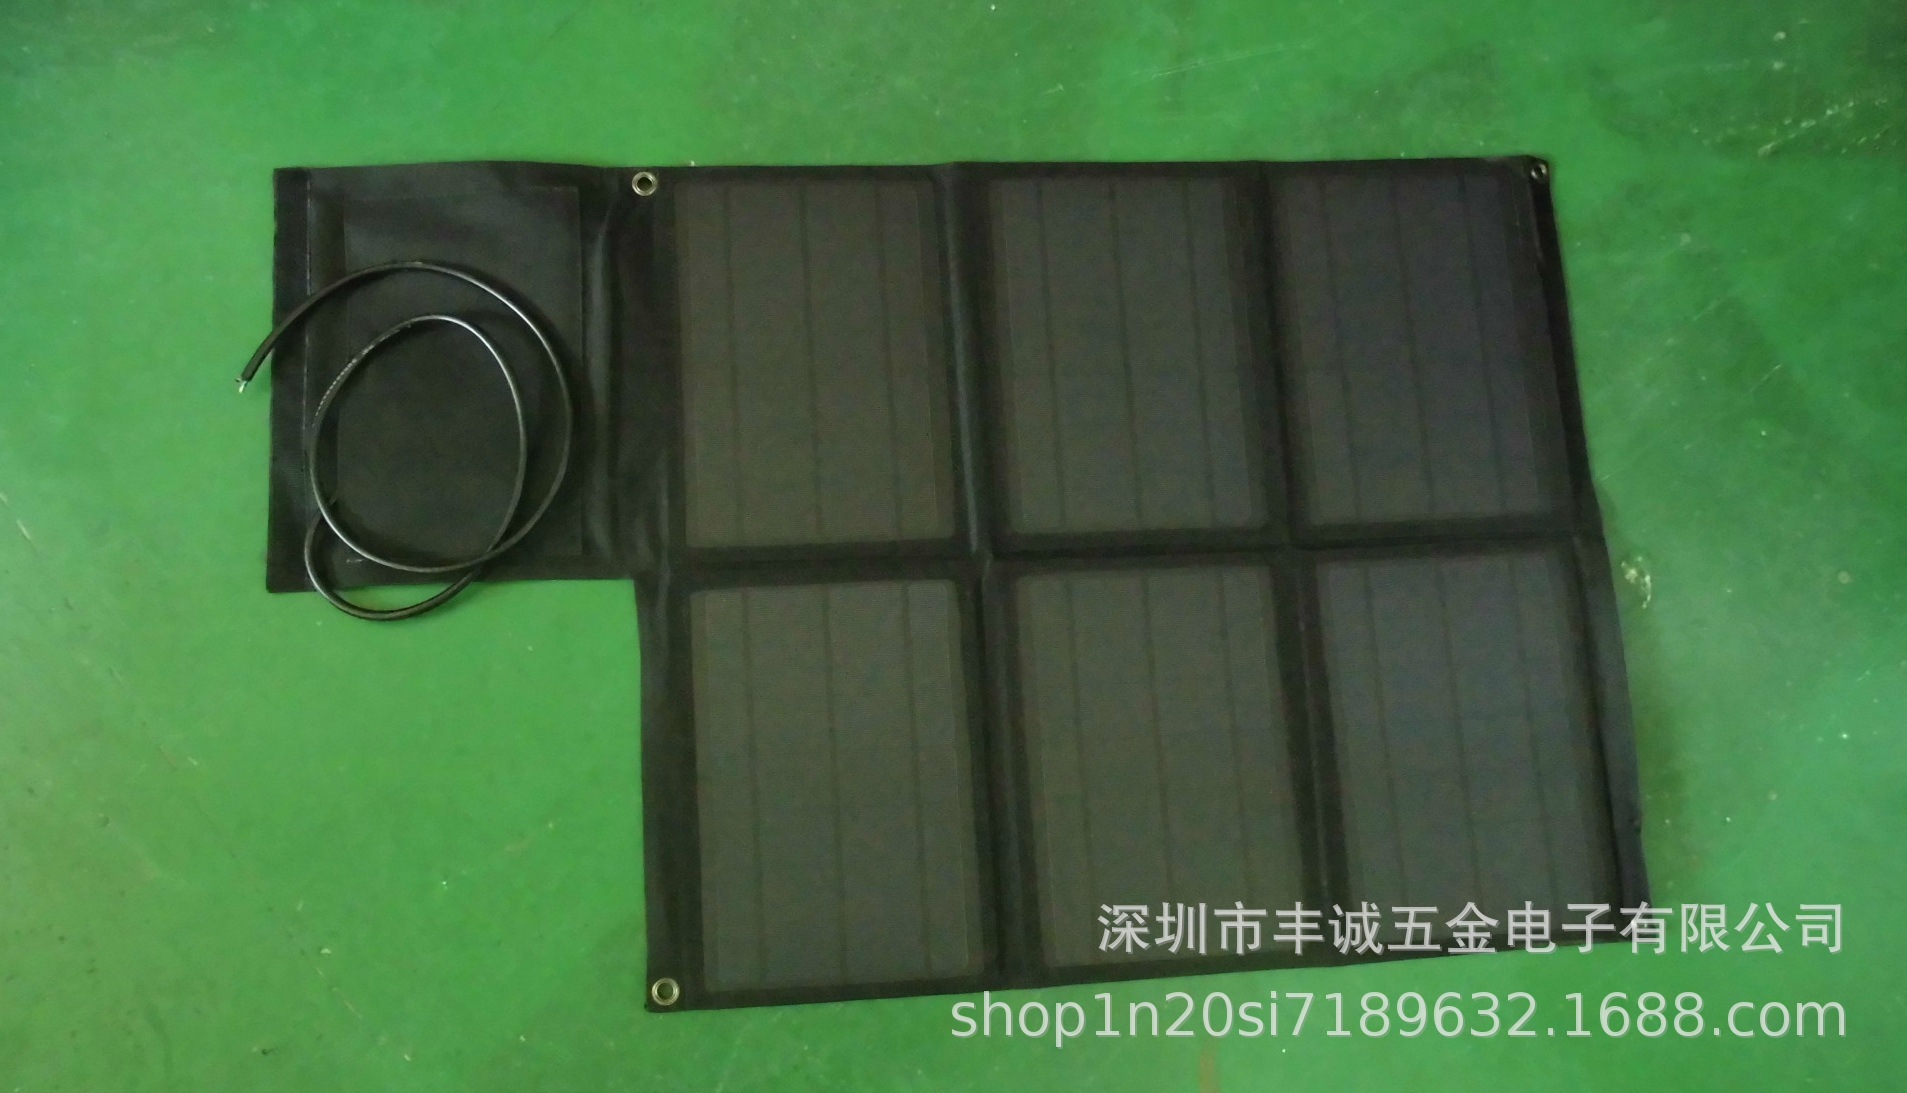 Chargeur solaire - 21 V - batterie Sans batterie mAh - Ref 3395488 Image 5